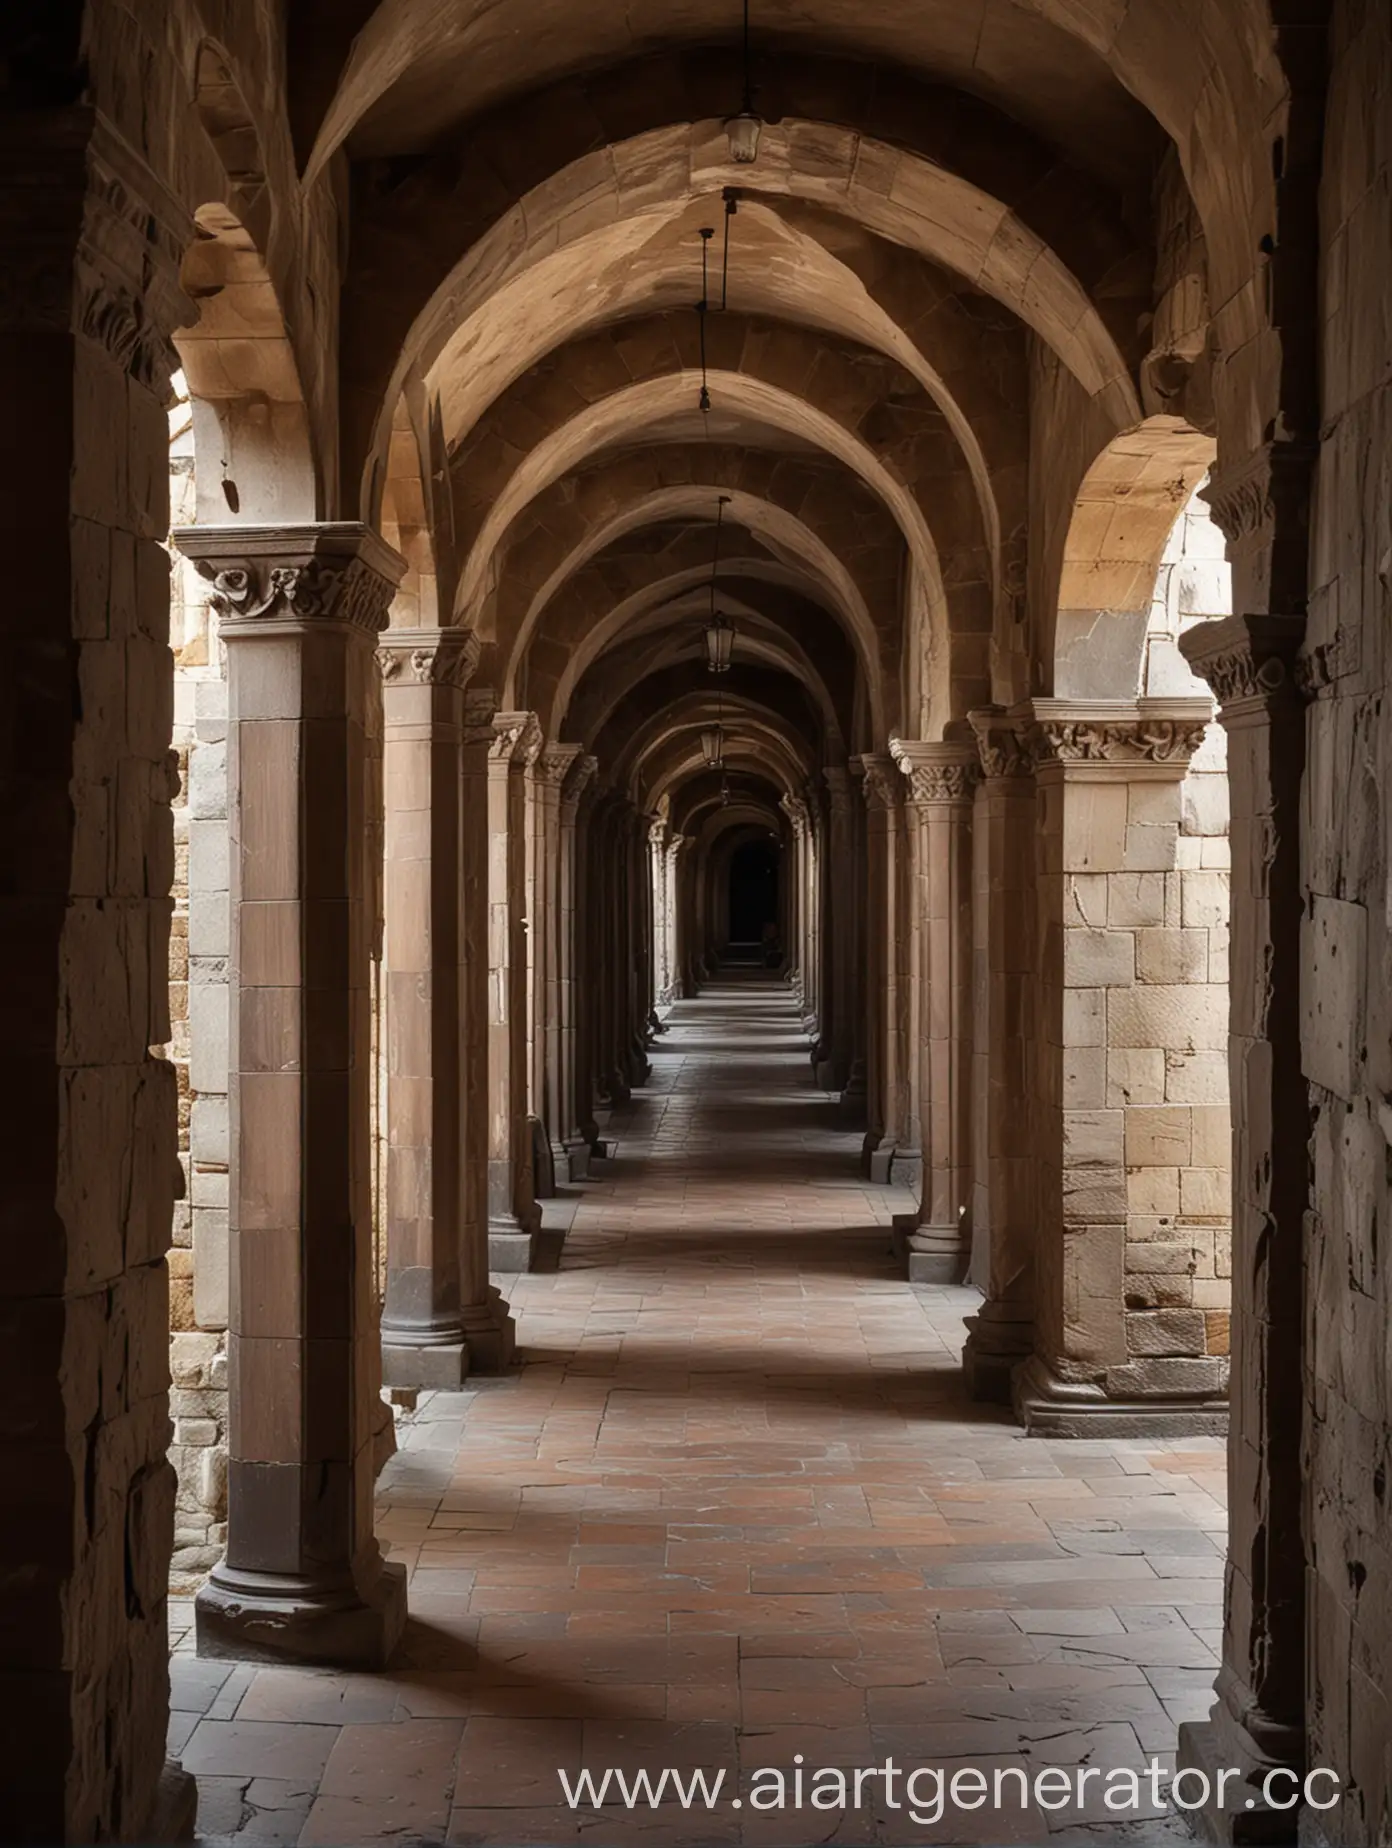 коридор в замке с колоннами в древнем стиле, стены из темного дерева